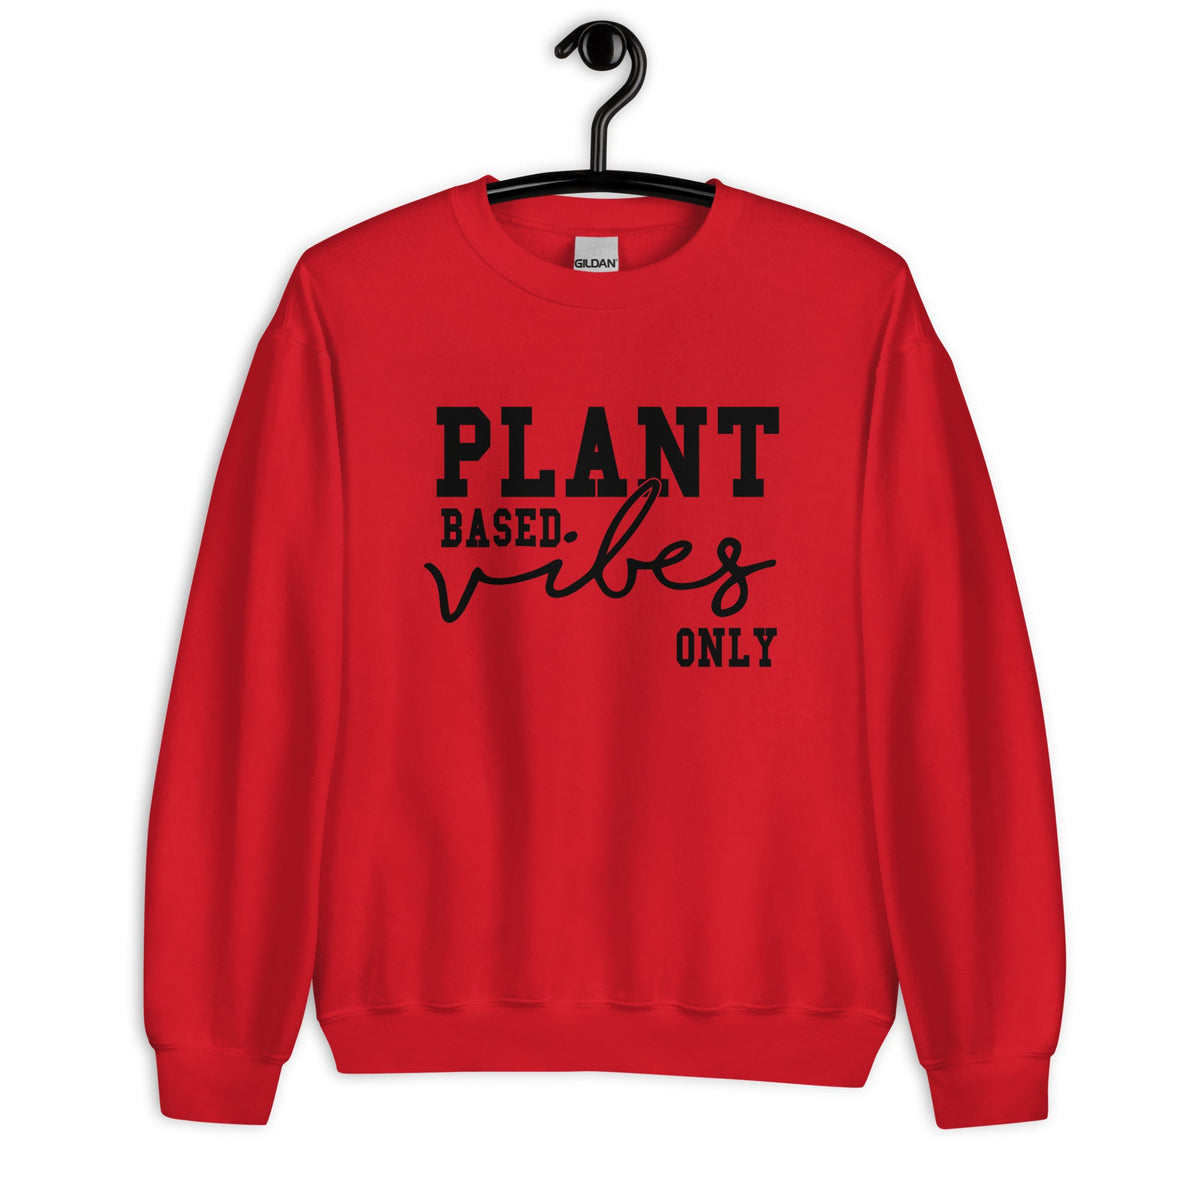 PLANT BASED VIBES Sweatshirt